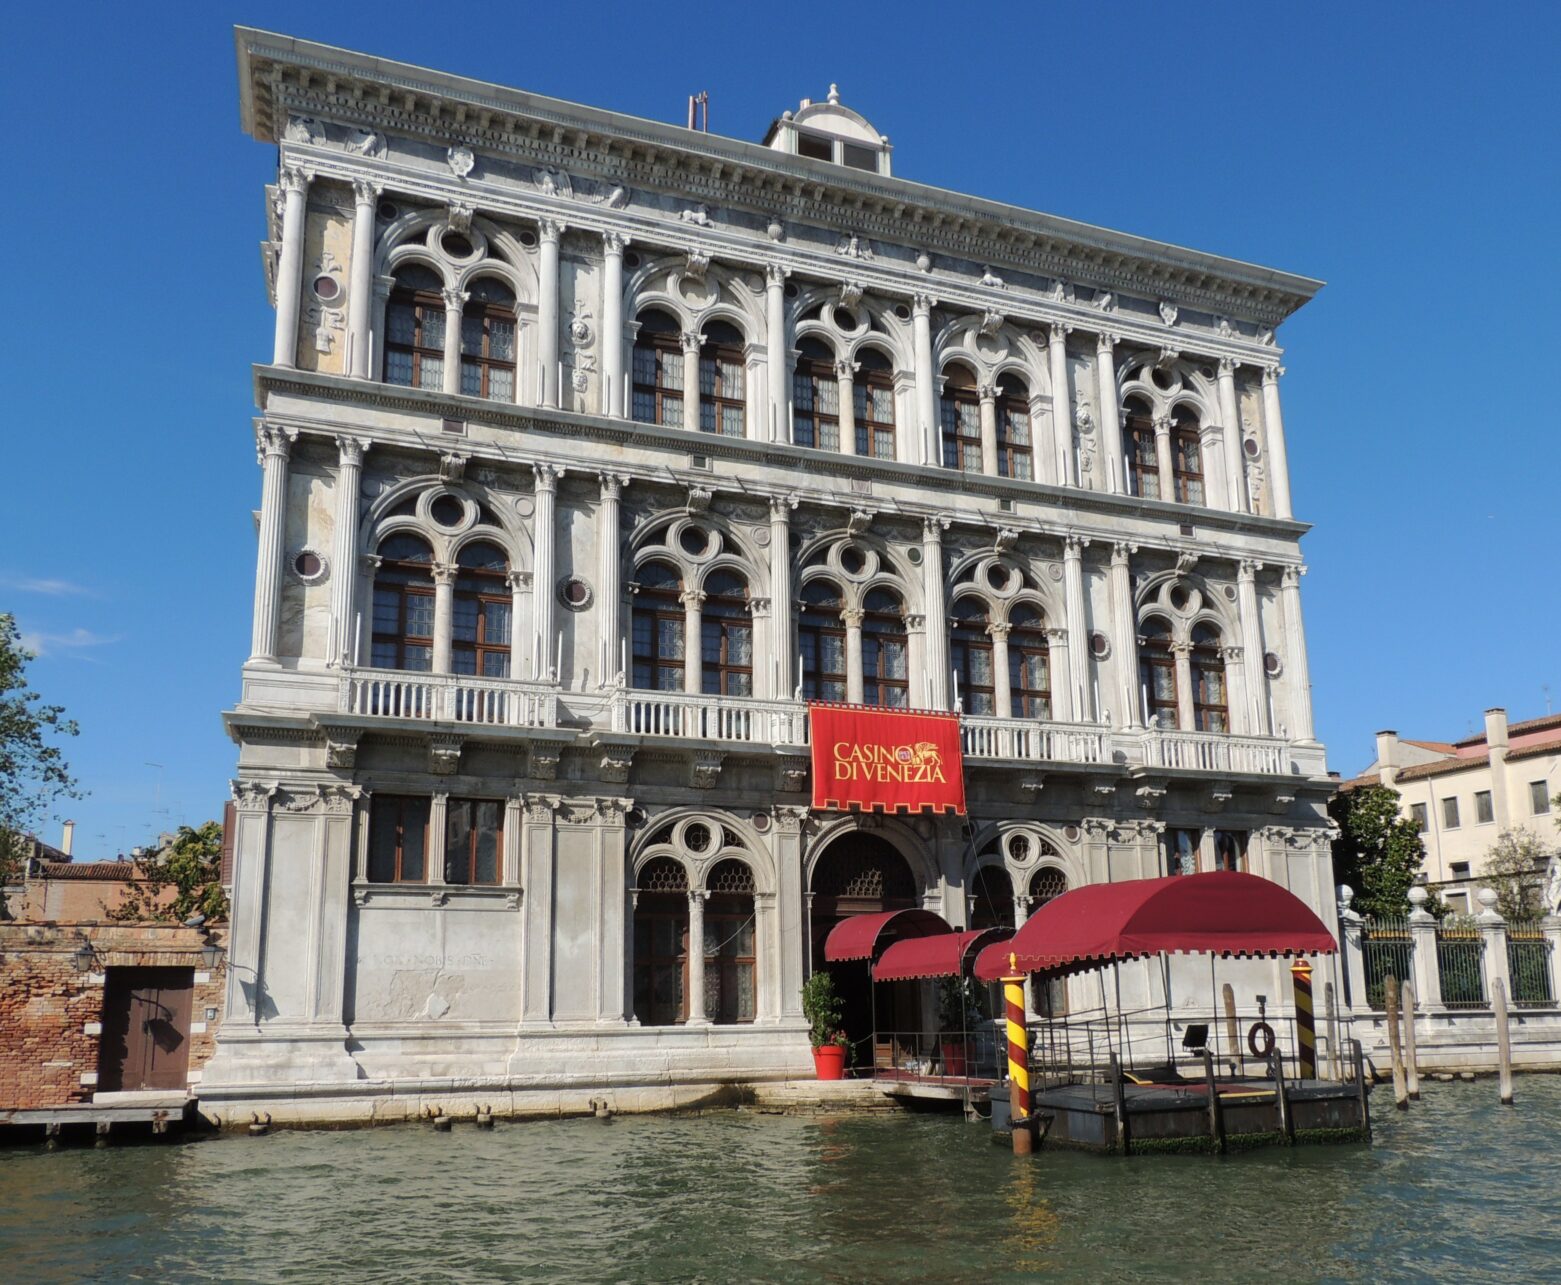 Casino di Venezia, Italy